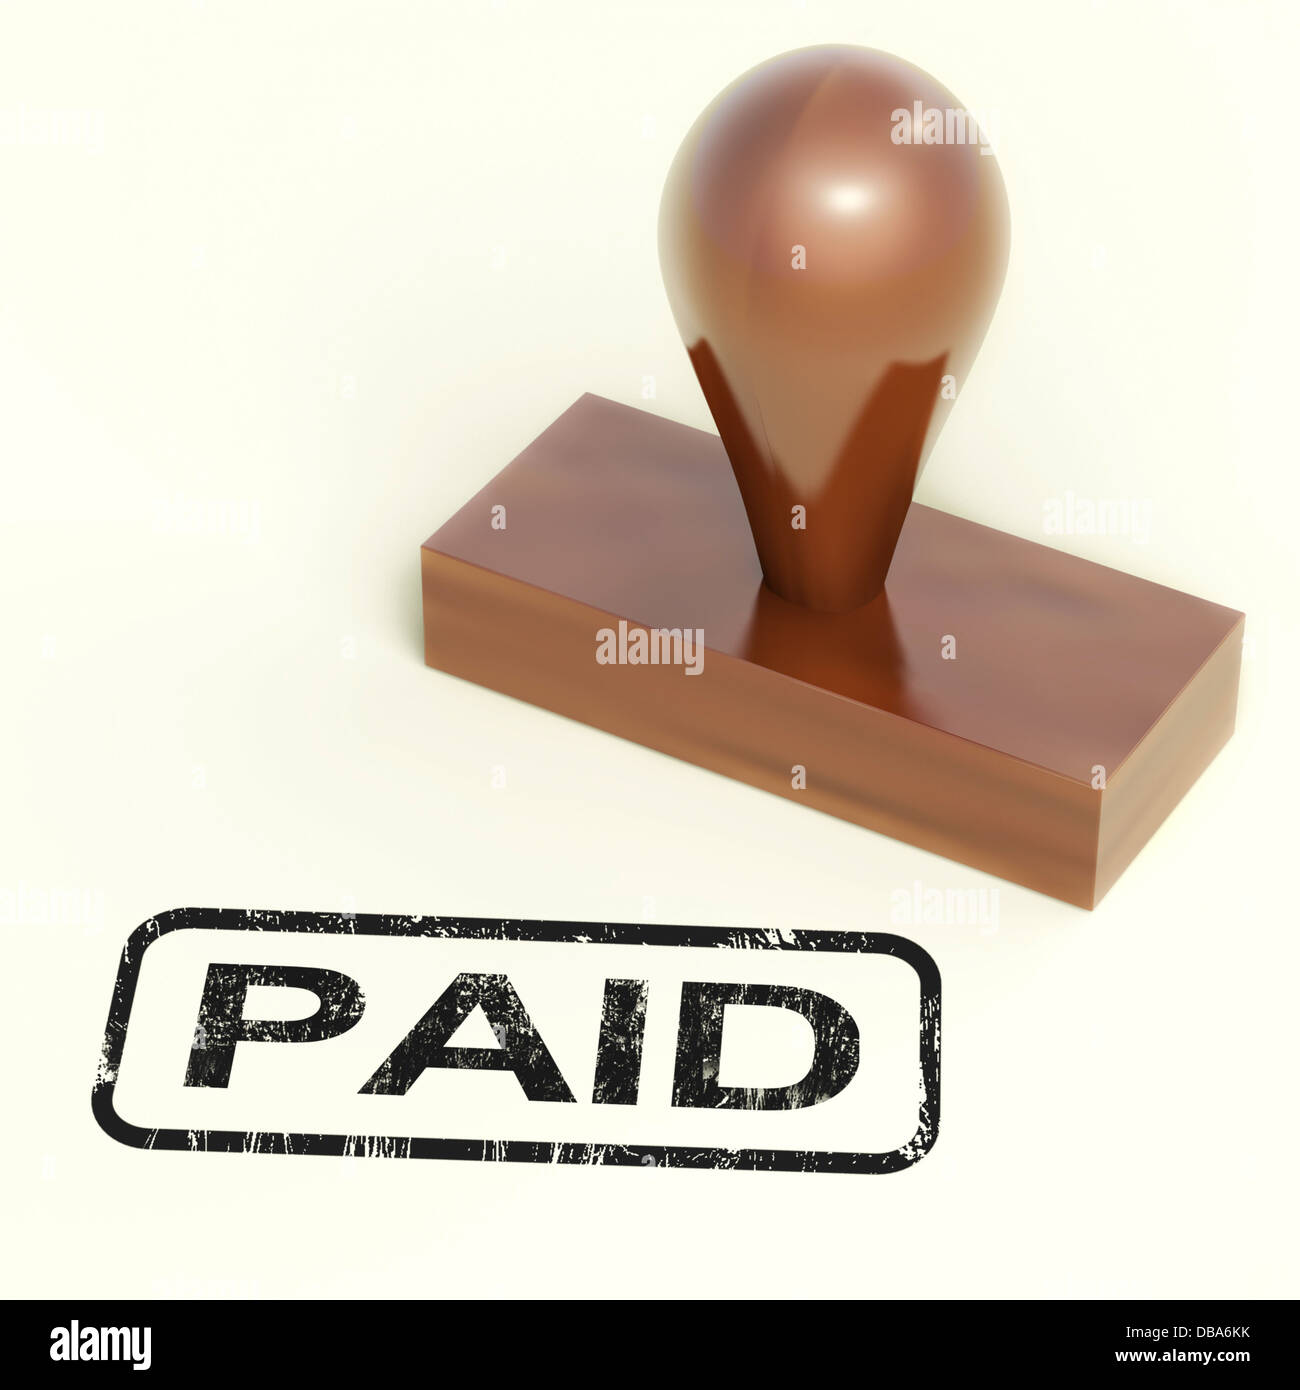 Bezahlt Stempel zeigt Zahlungsbestätigung Stockfoto